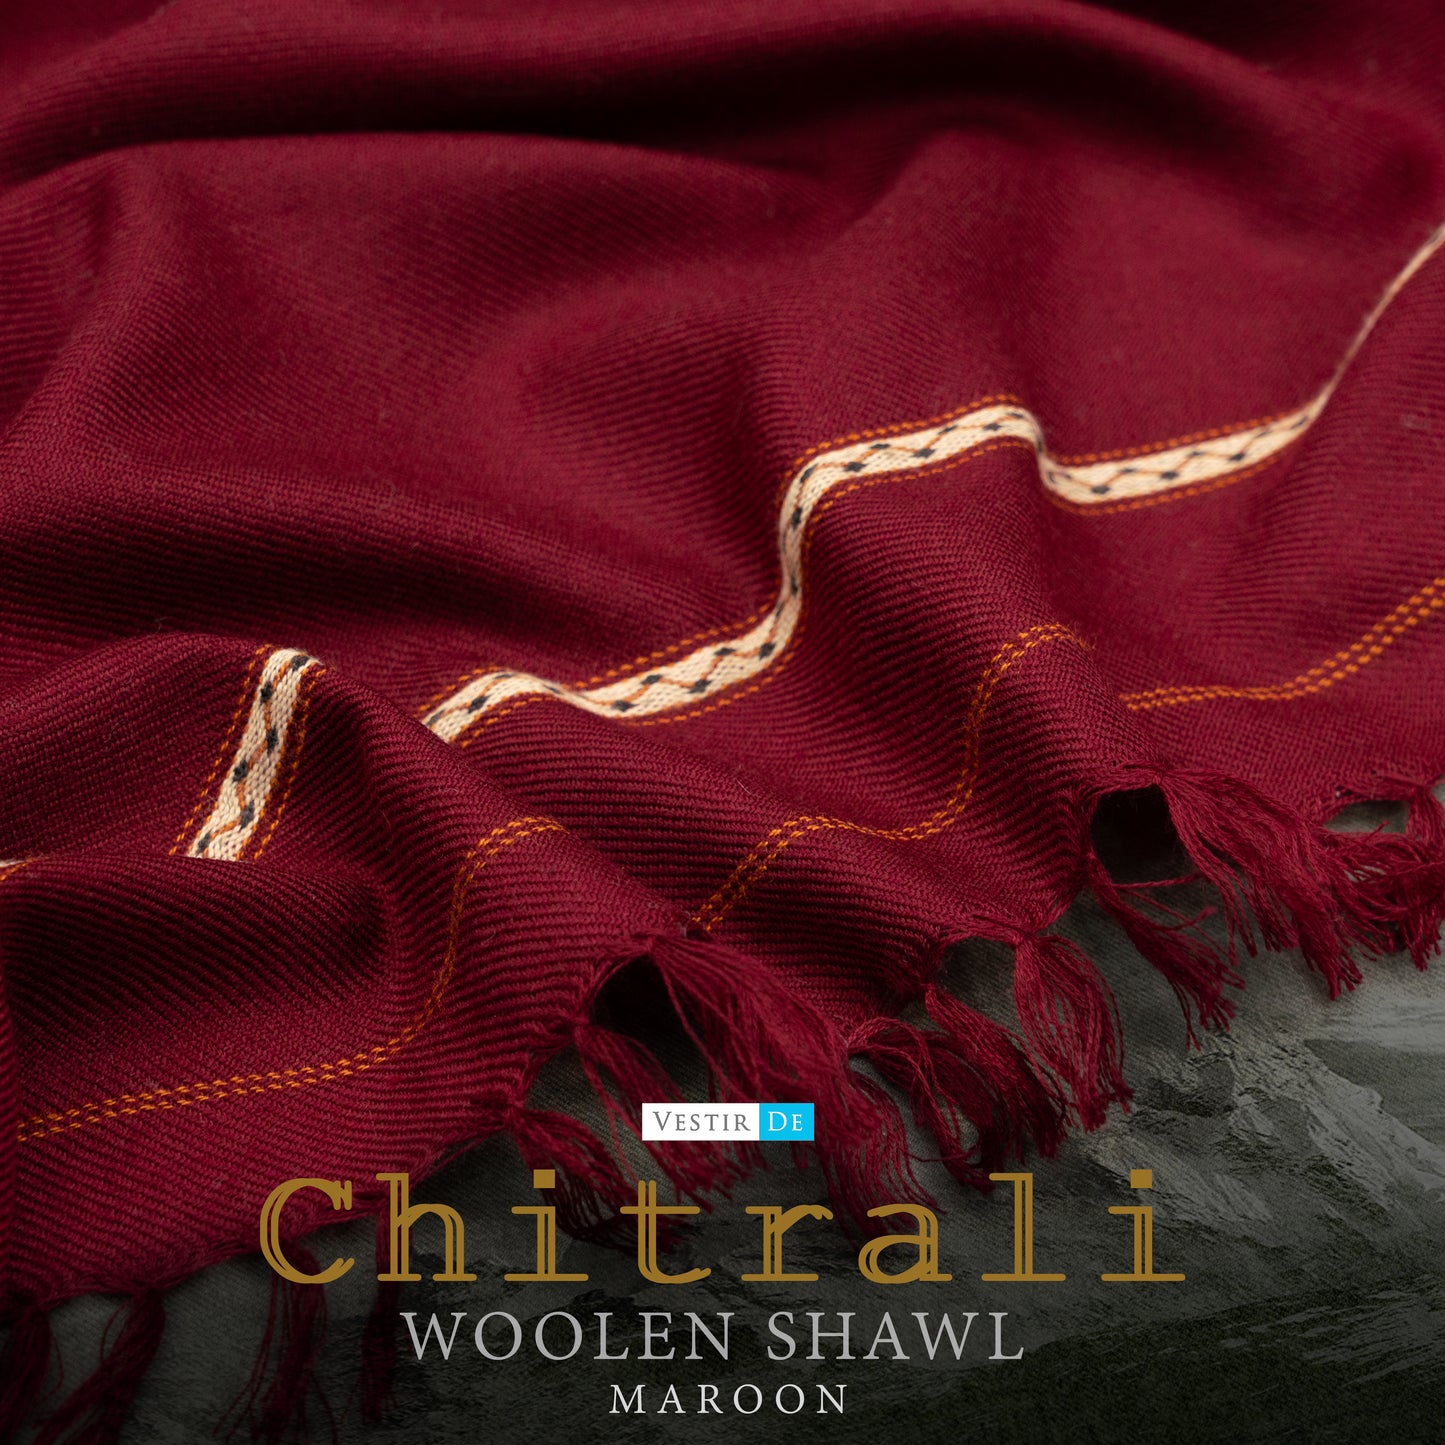 Maroon Chitrali Woolen Shawl